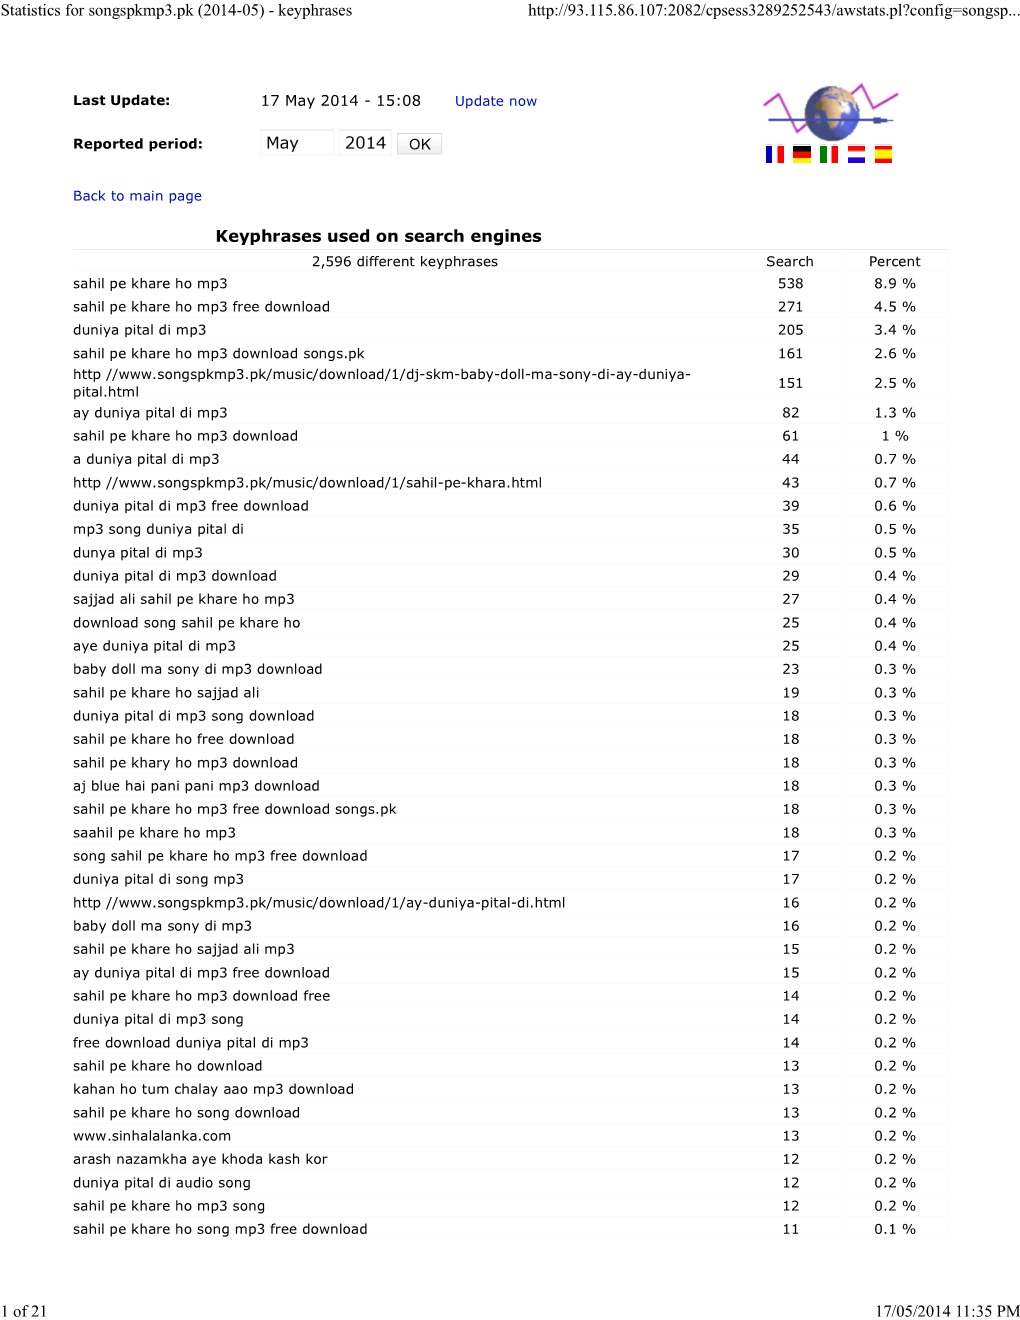 Statistics for Songspkmp3.Pk (2014-05) - Keyphrases